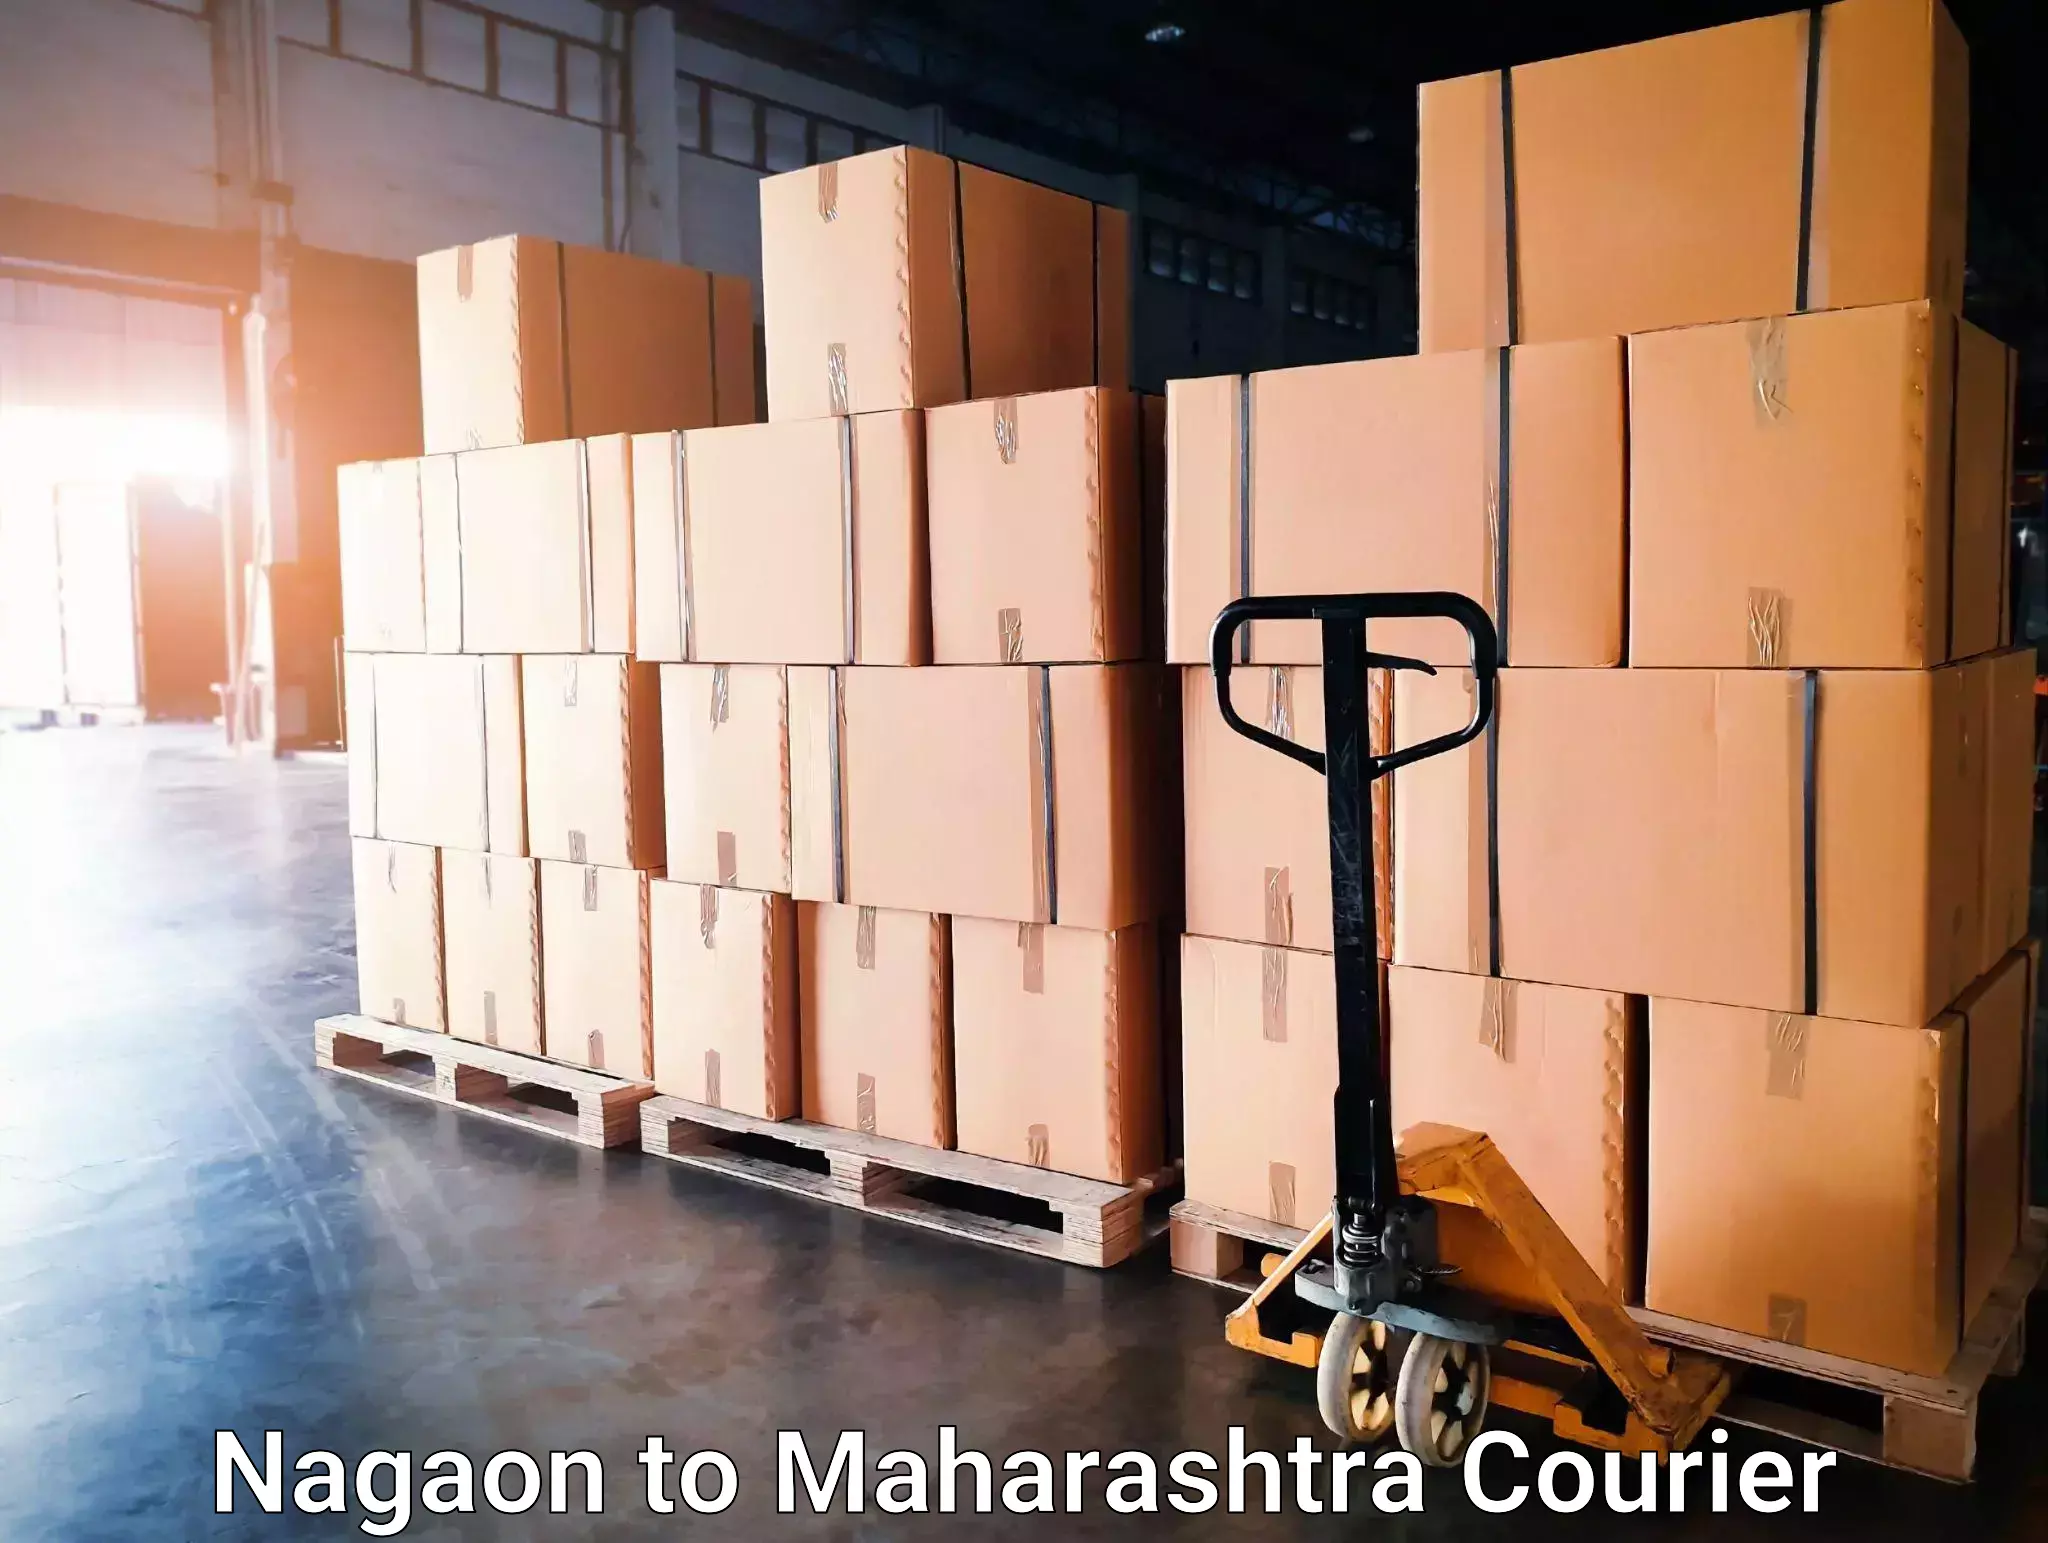 Efficient freight service Nagaon to Dindori Nashik